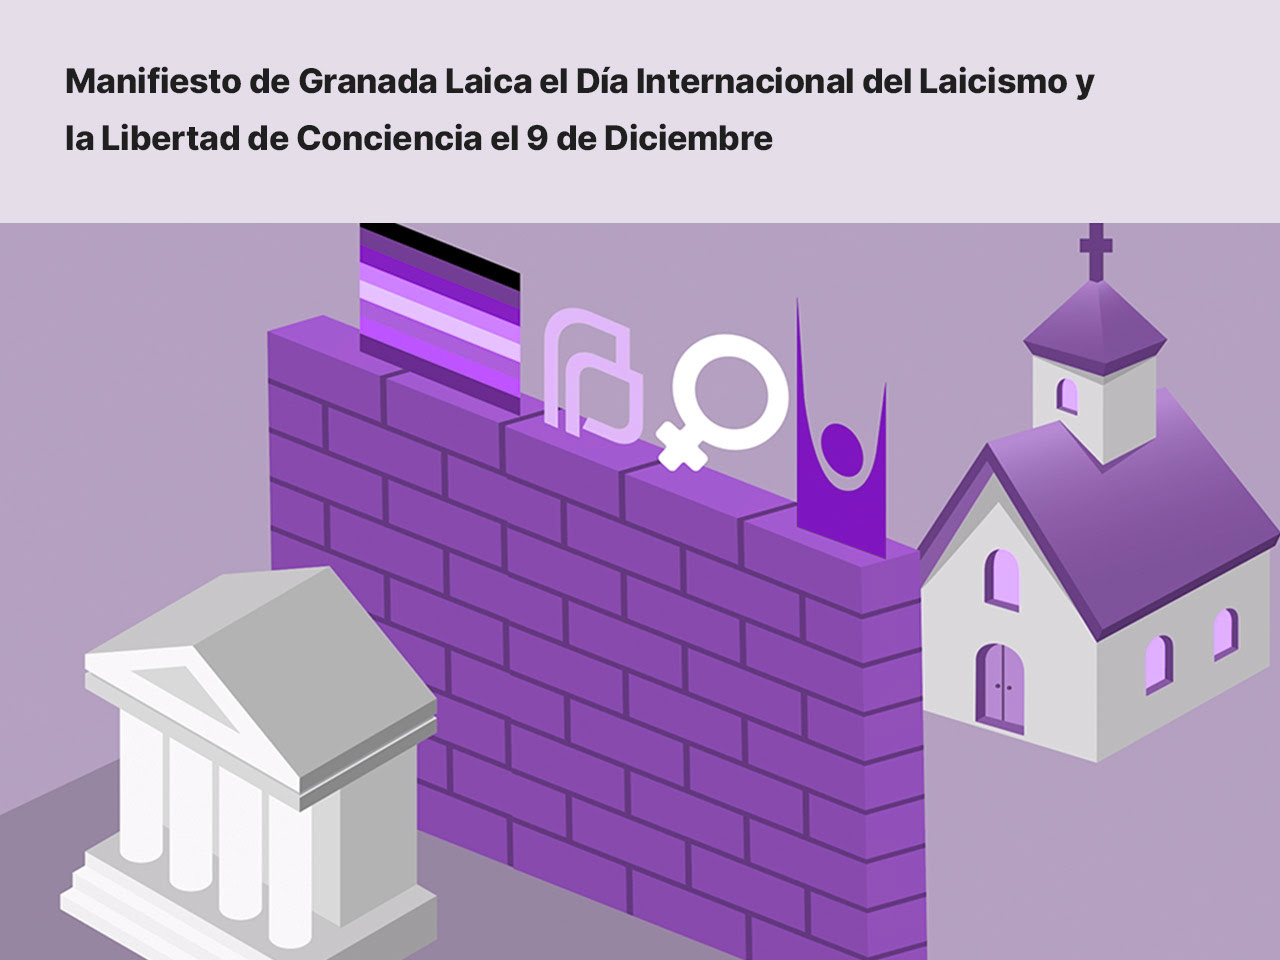 Granada Laica convoca una concentración mañana jueves con ocasión del Día Internacional del Laicismo y la Libertad de Conciencia